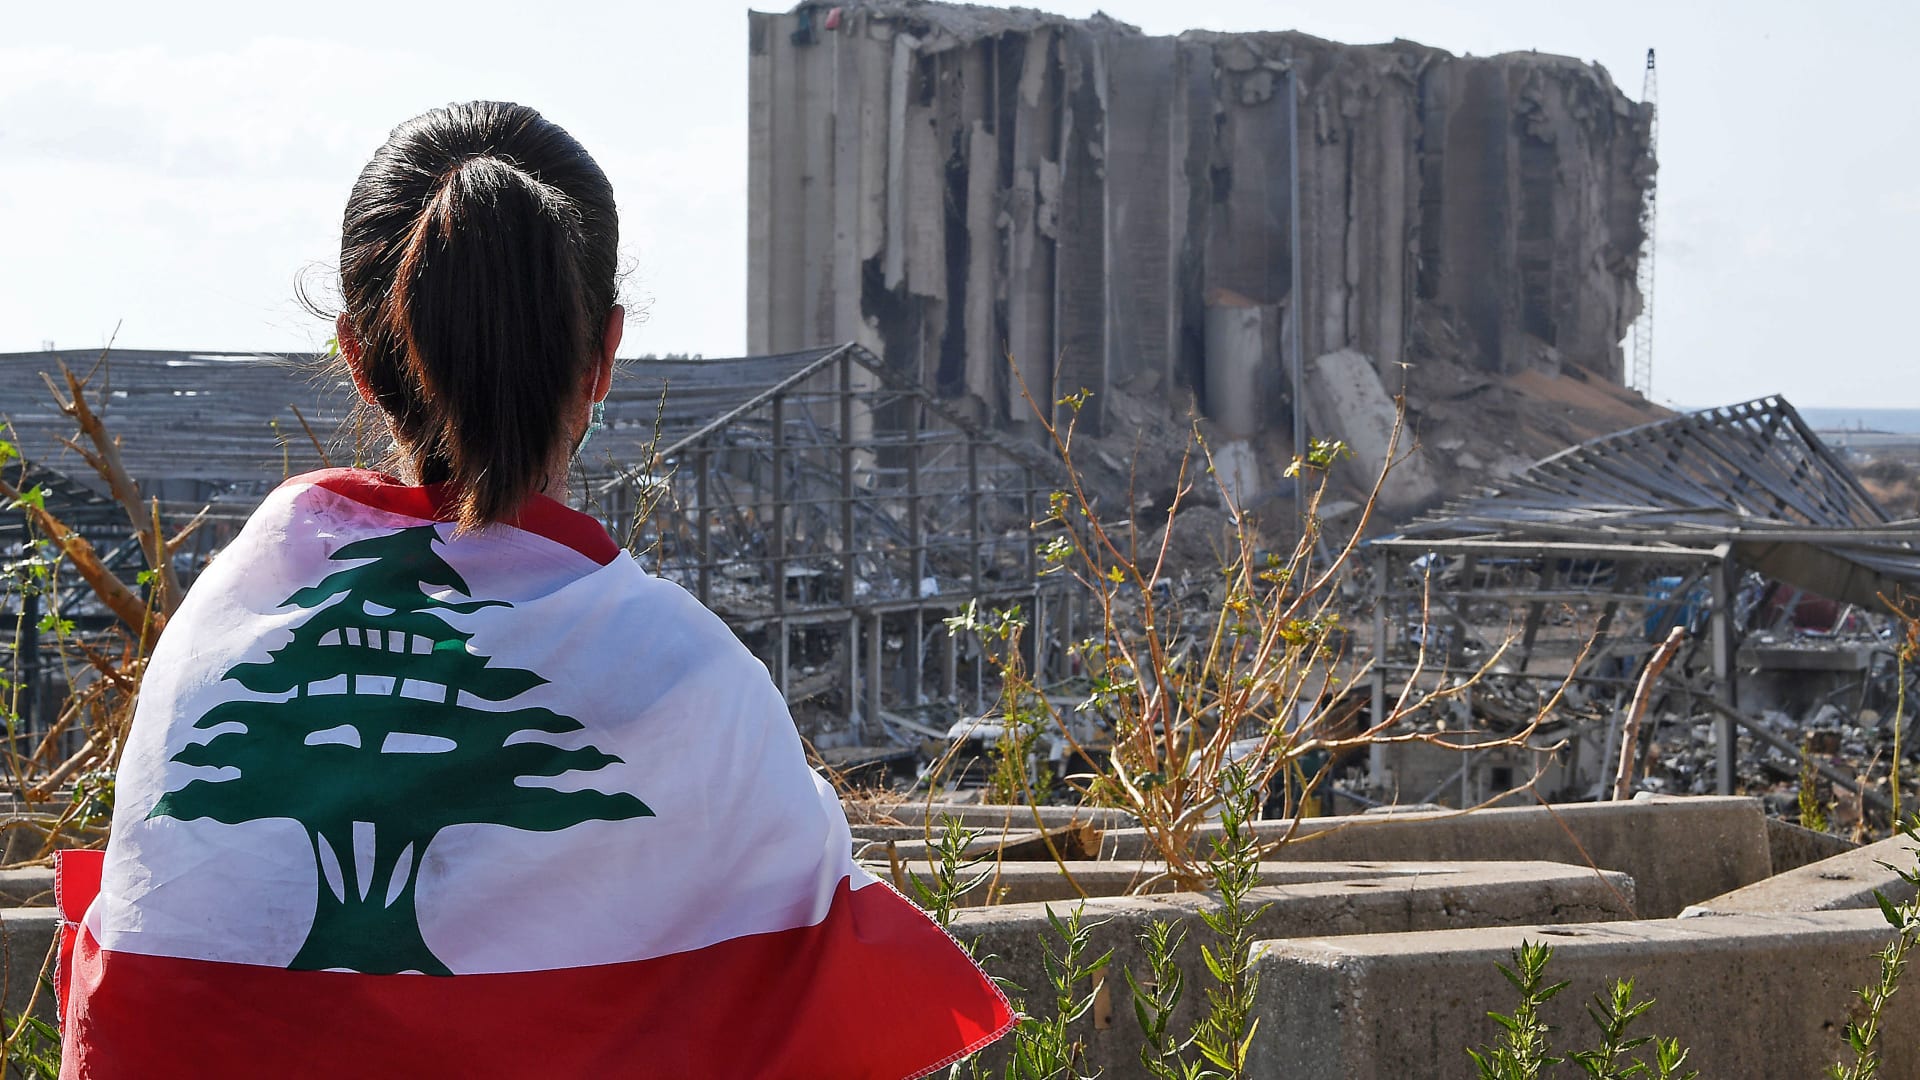 لقطات لم تعرض سابقاً تظهر اللحظة الصادمة لانفجار مرفأ بيروت